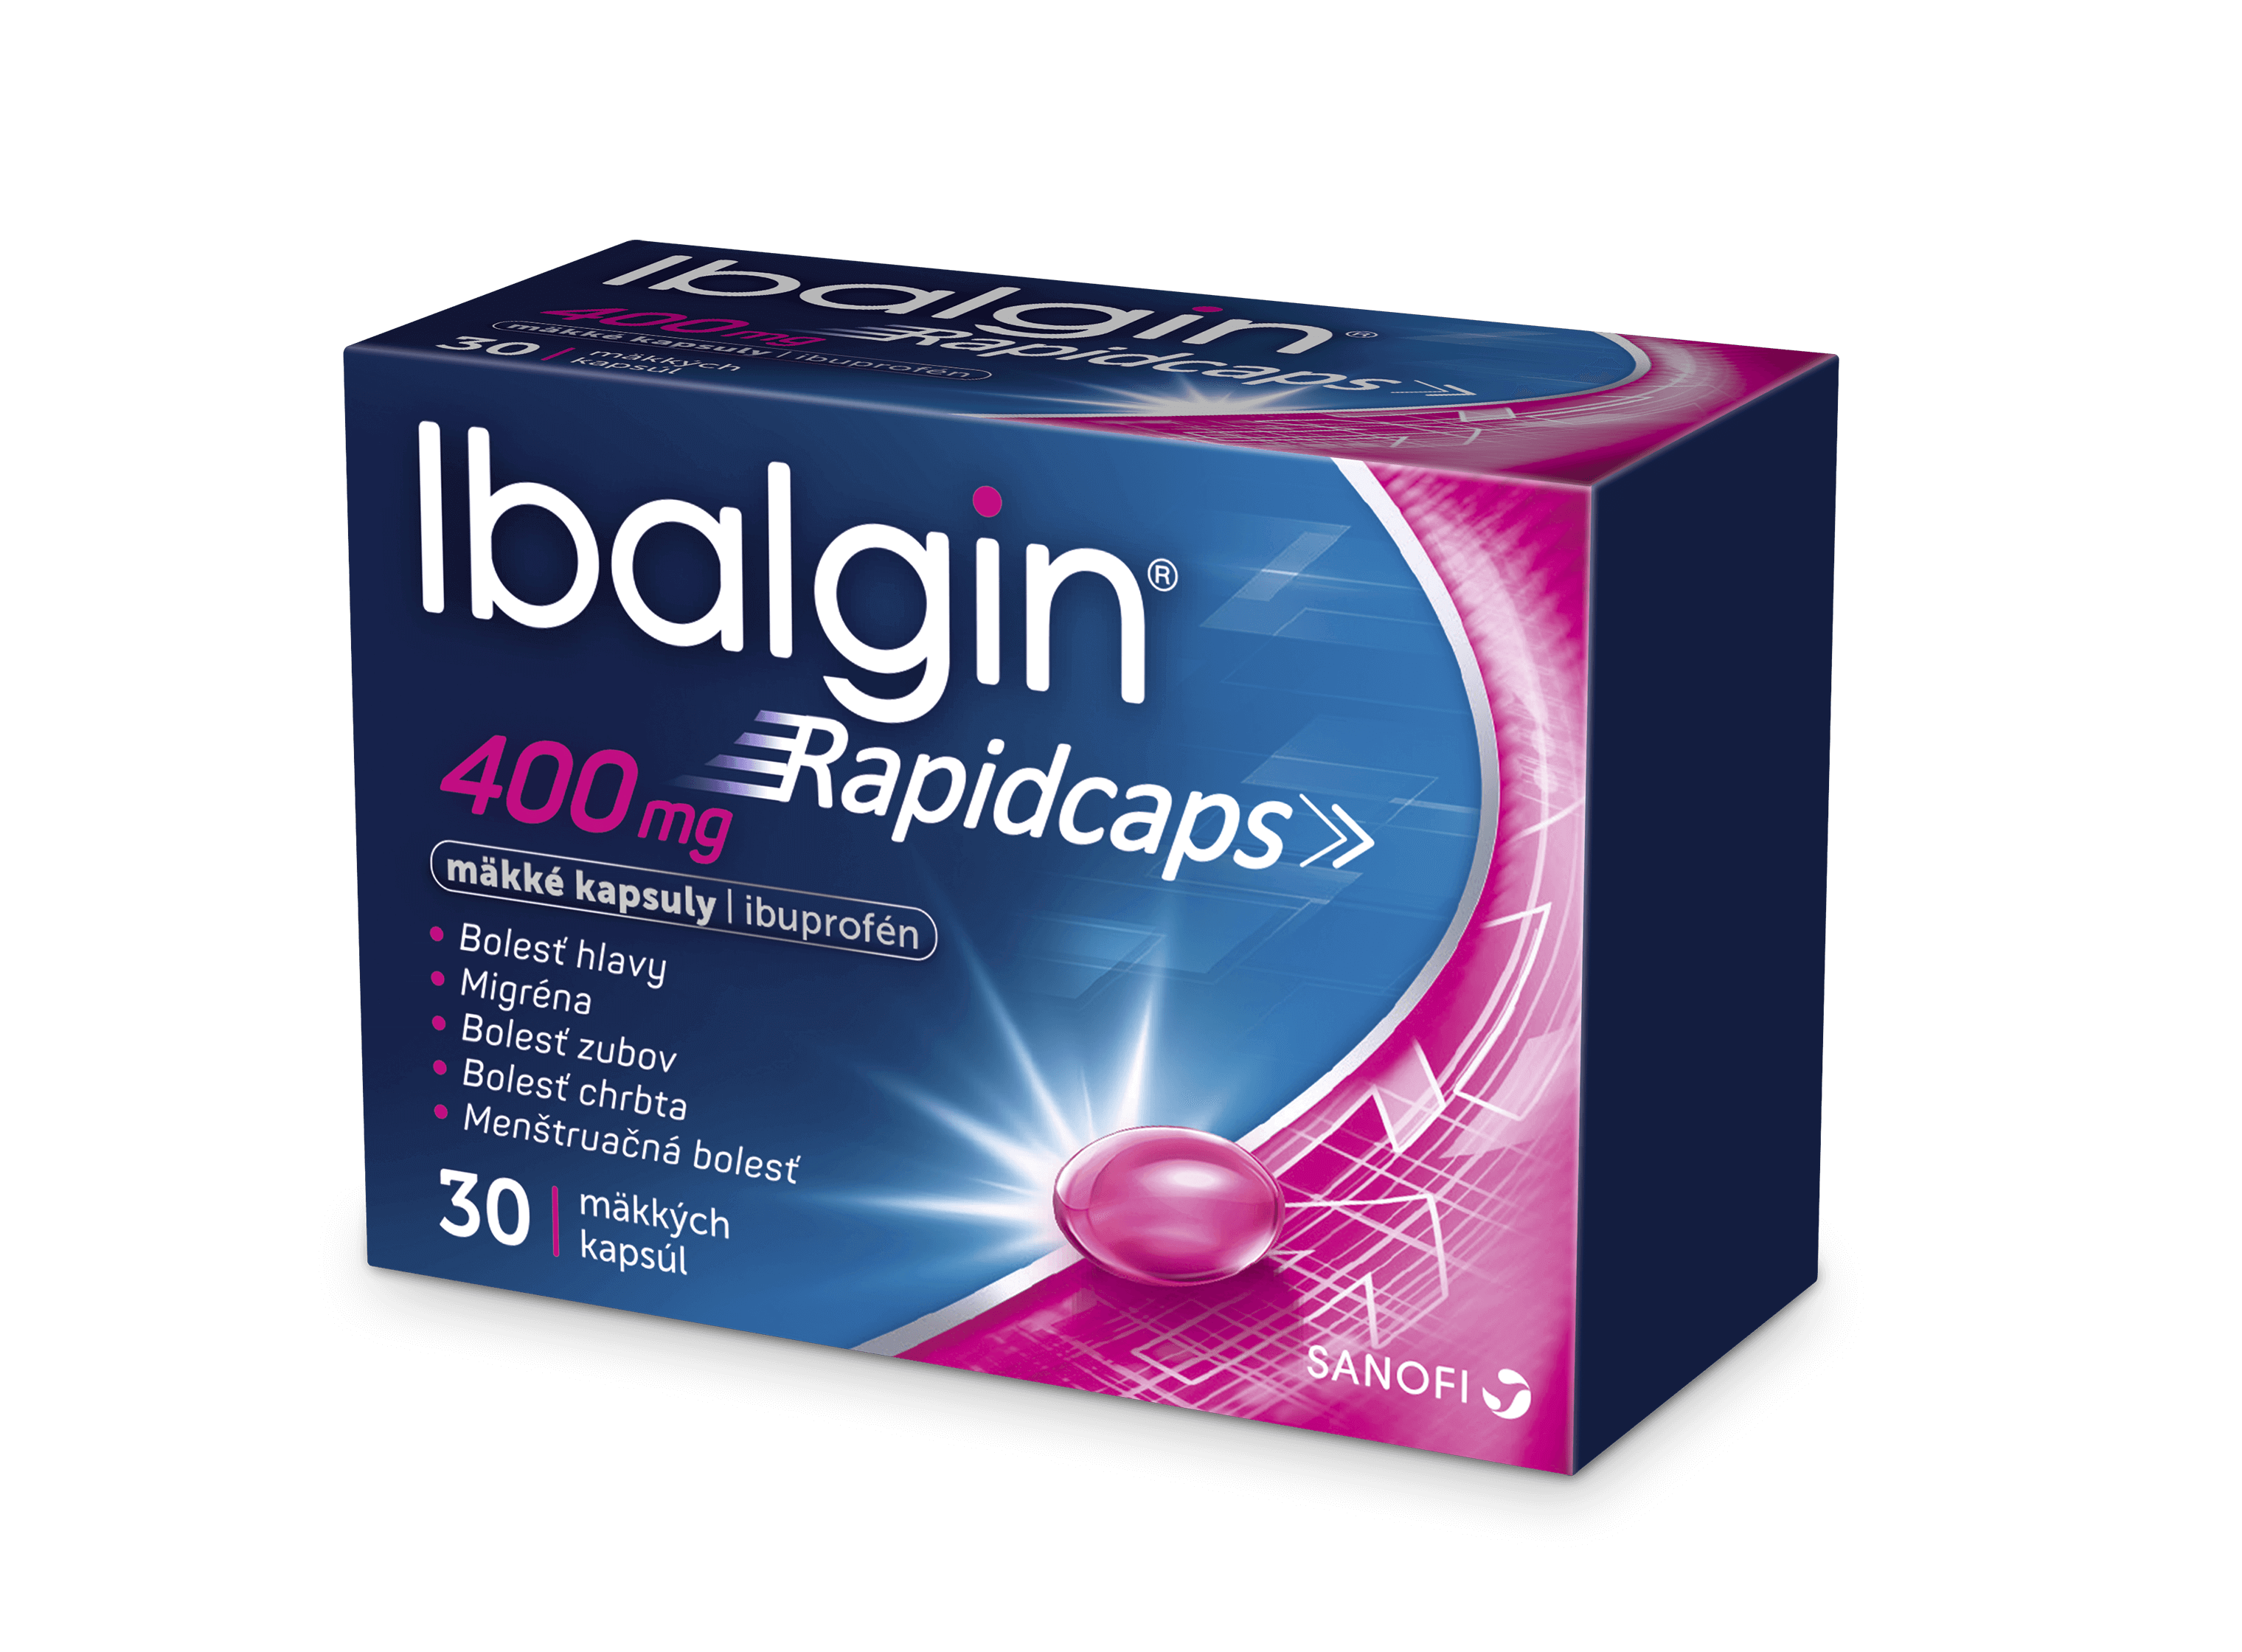 Ibalgin Rapidcaps 400